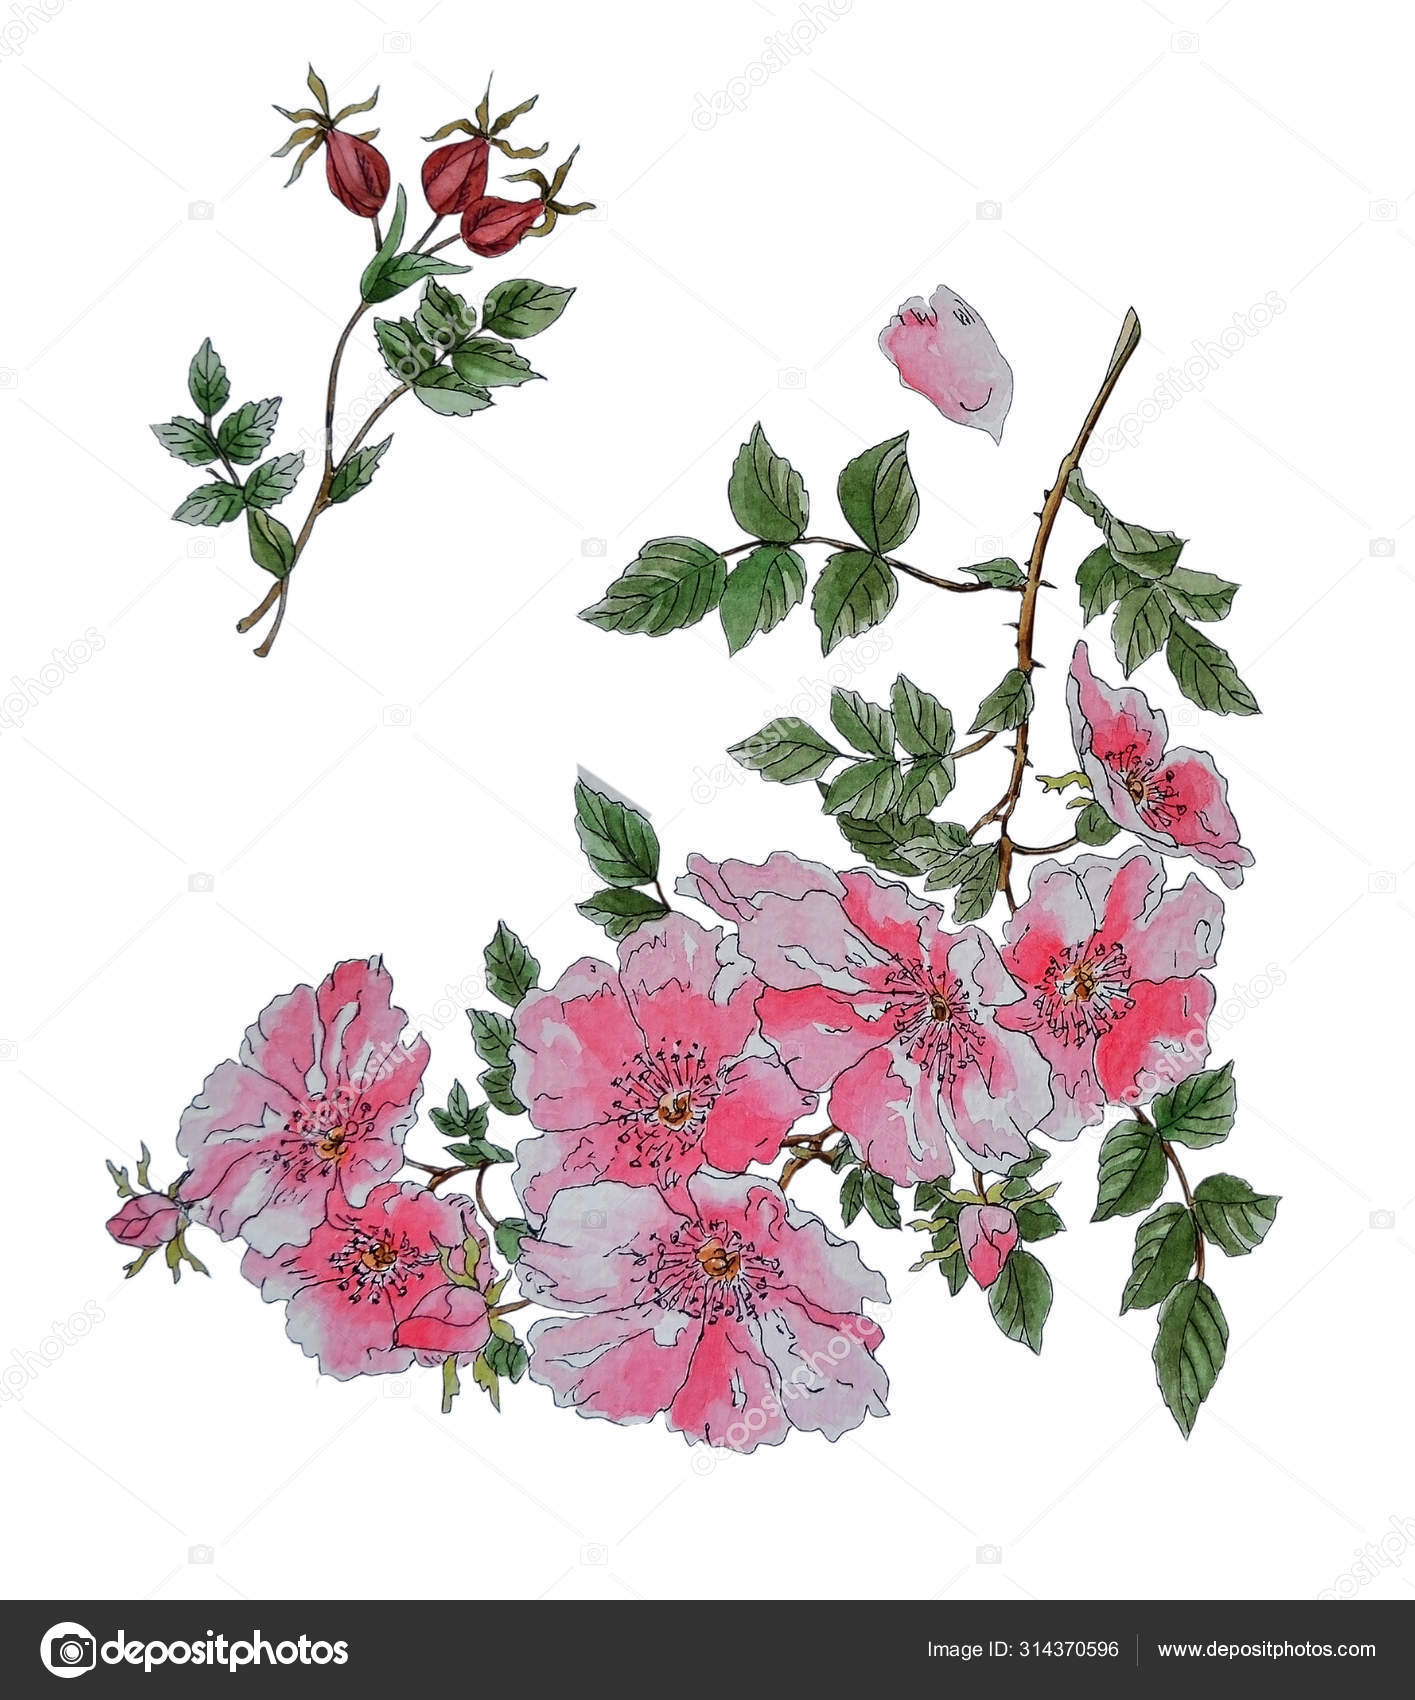 Featured image of post Imagens De Roseiras Floridas Uma das flores mais apreciadas